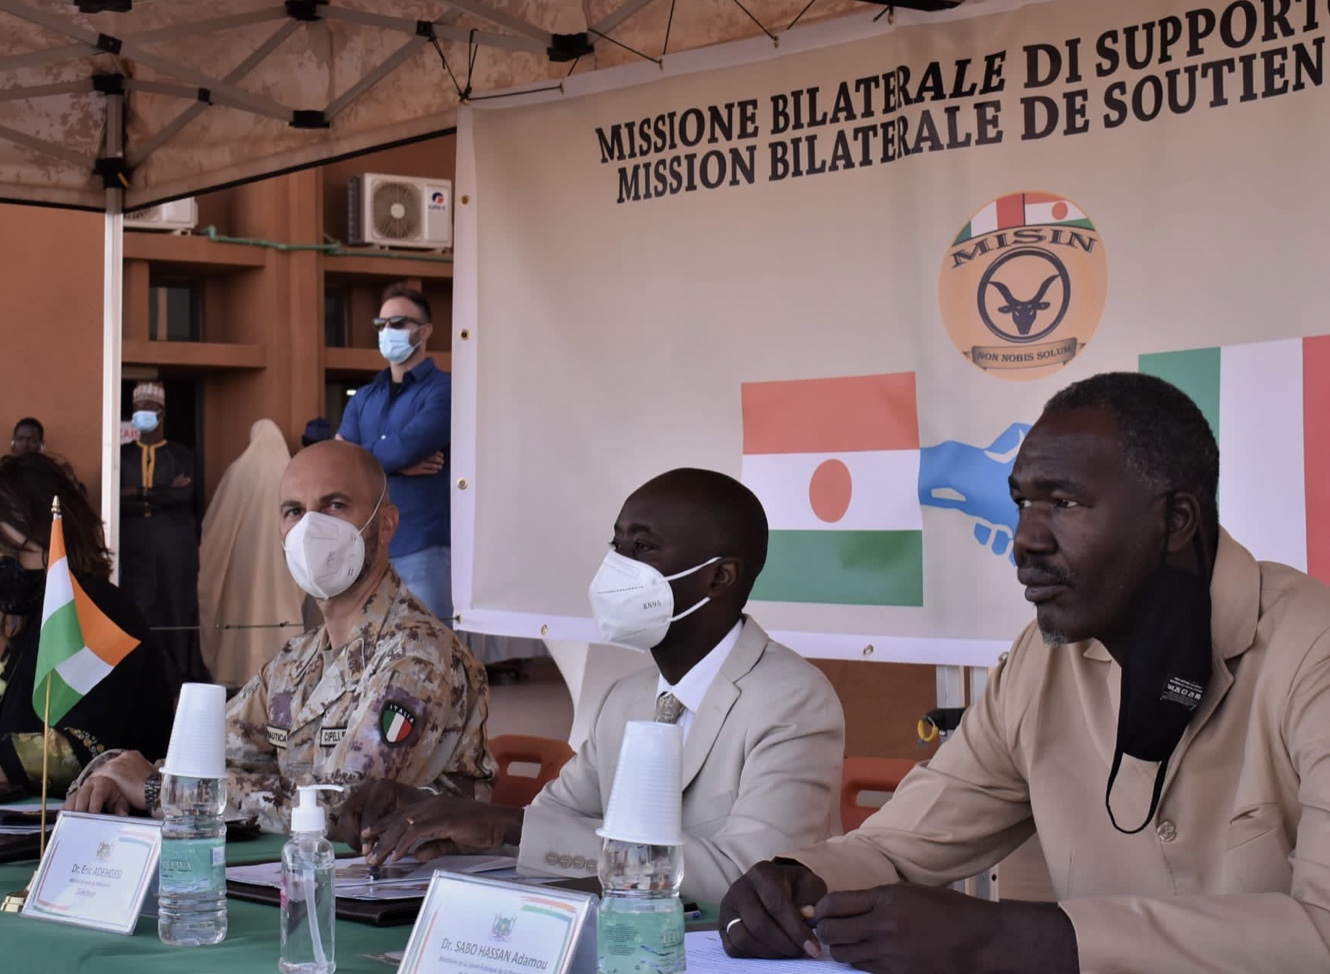 Defense-Maeci في النيجر: تقوم MISIN والسفارة الإيطالية بتسليم المعدات الطبية إلى مستشفى نيامي